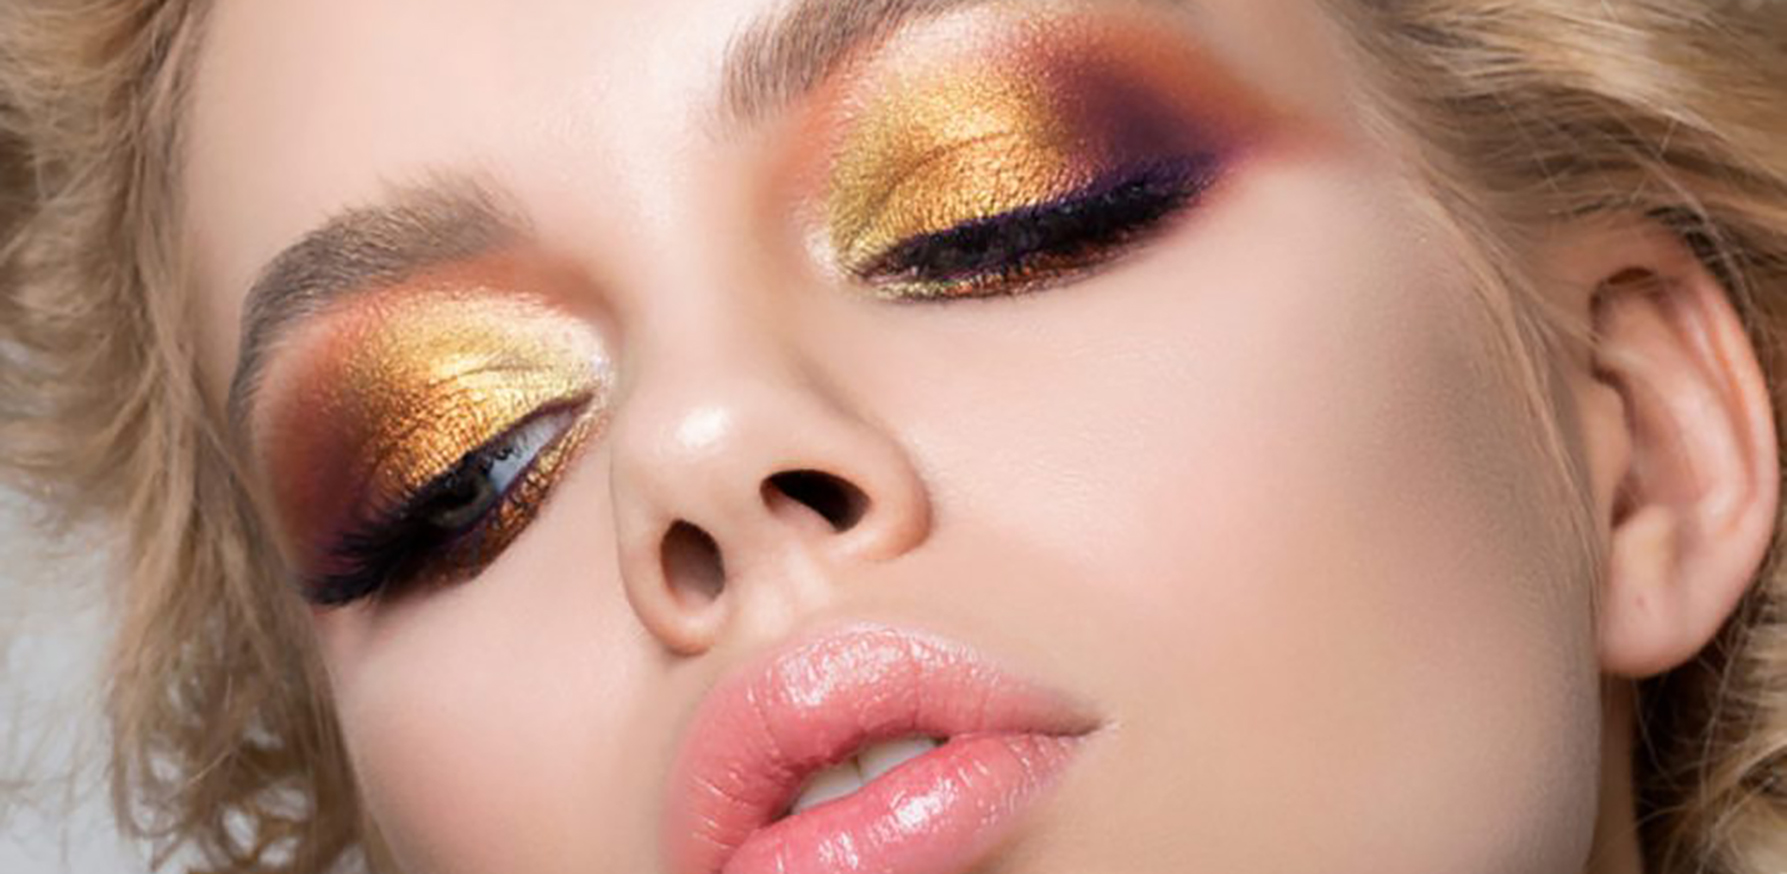 shutter-stock-woman-makeup-shimmer-1000x600